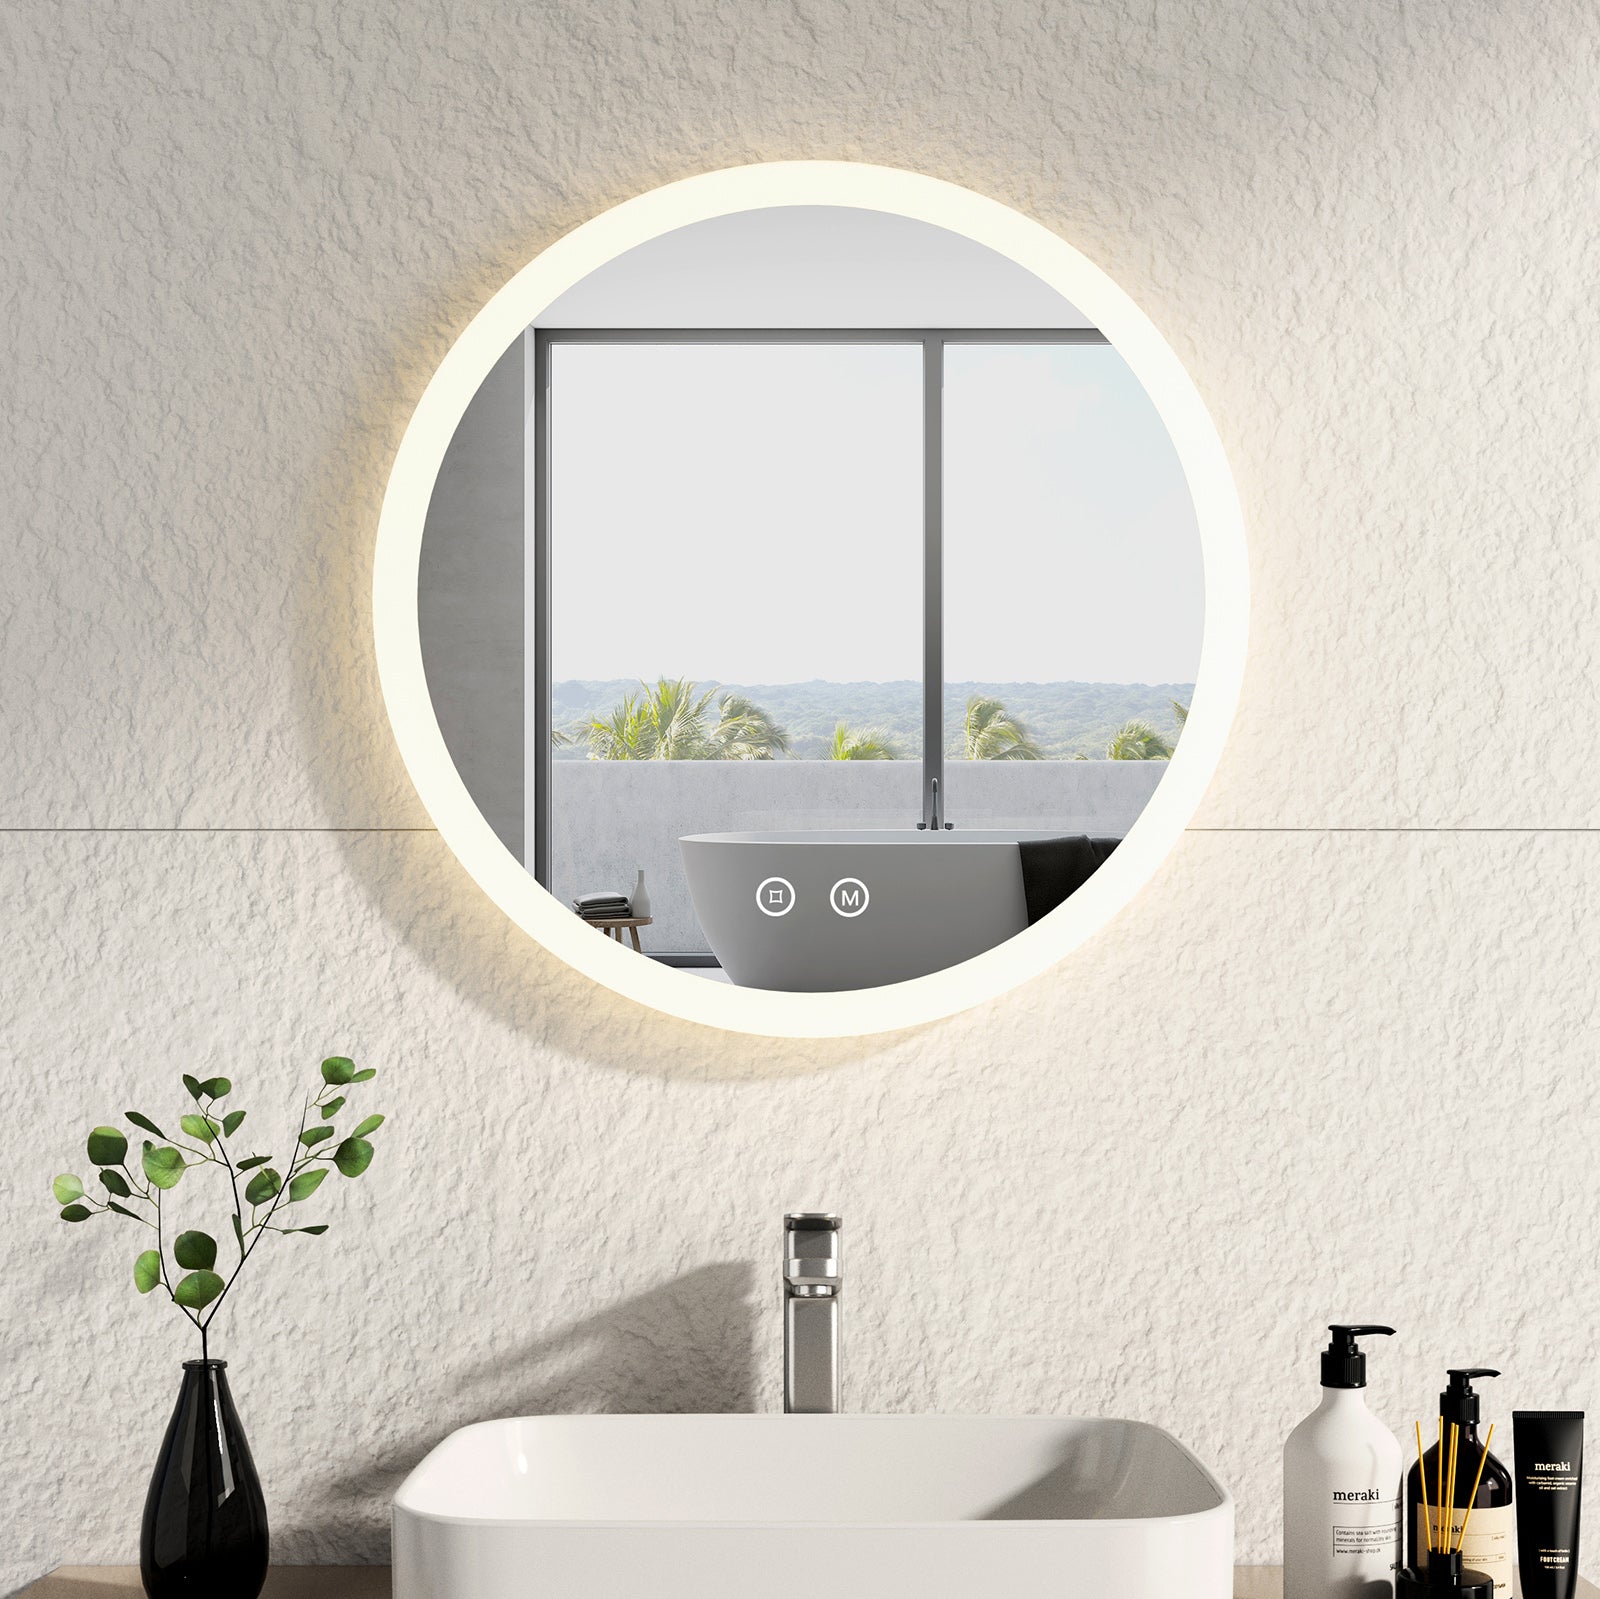 EMKE „LeeMi γ Pro“ Smart Badspiegel Rund 60x60cm, Touch, Antibeschlag, 3 Lichtfarben, Dimmung